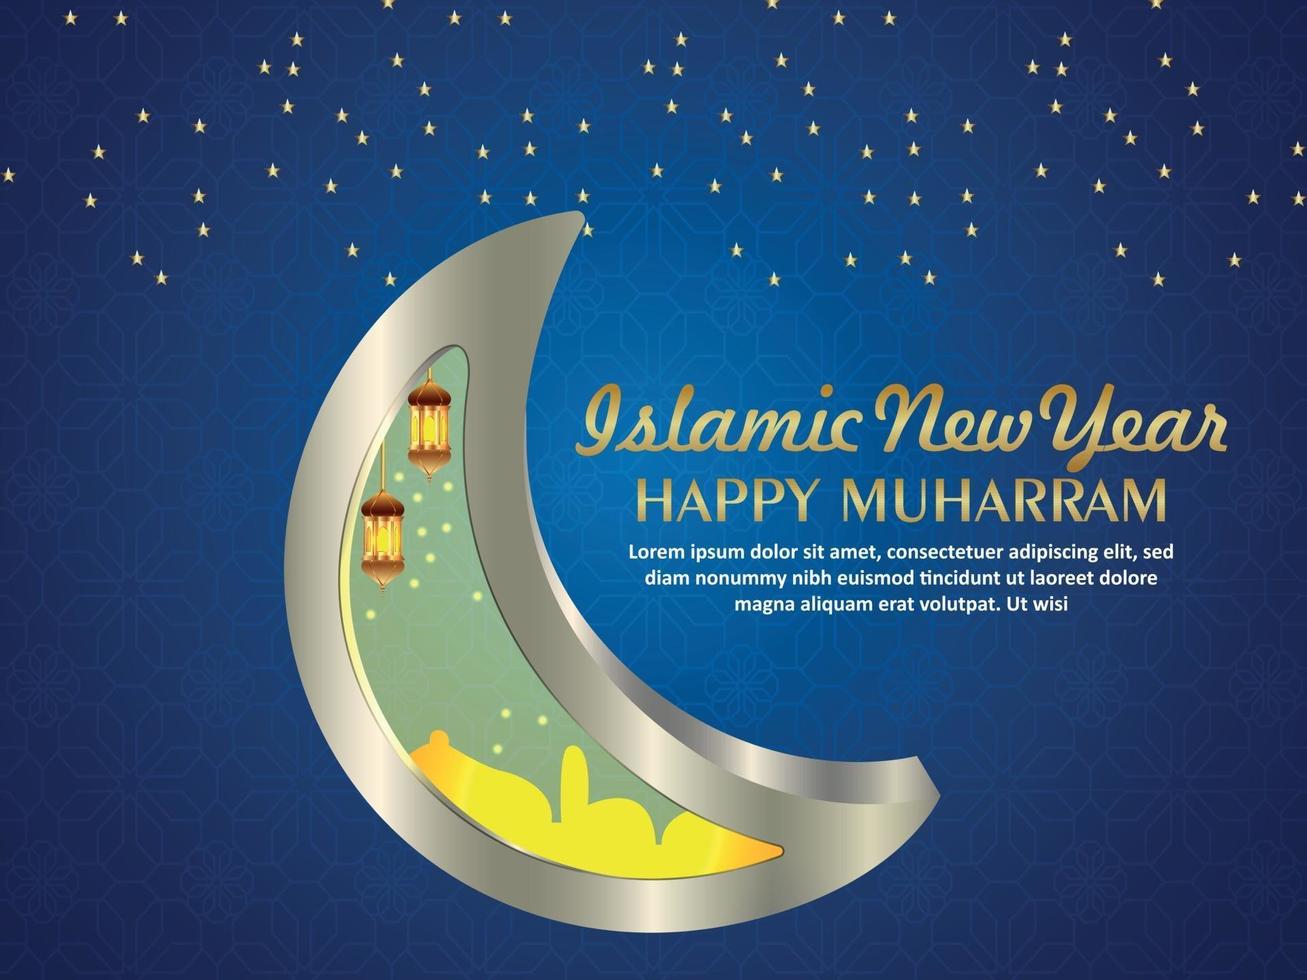 cartão comemorativo feliz muharram islâmico de ano novo vetor